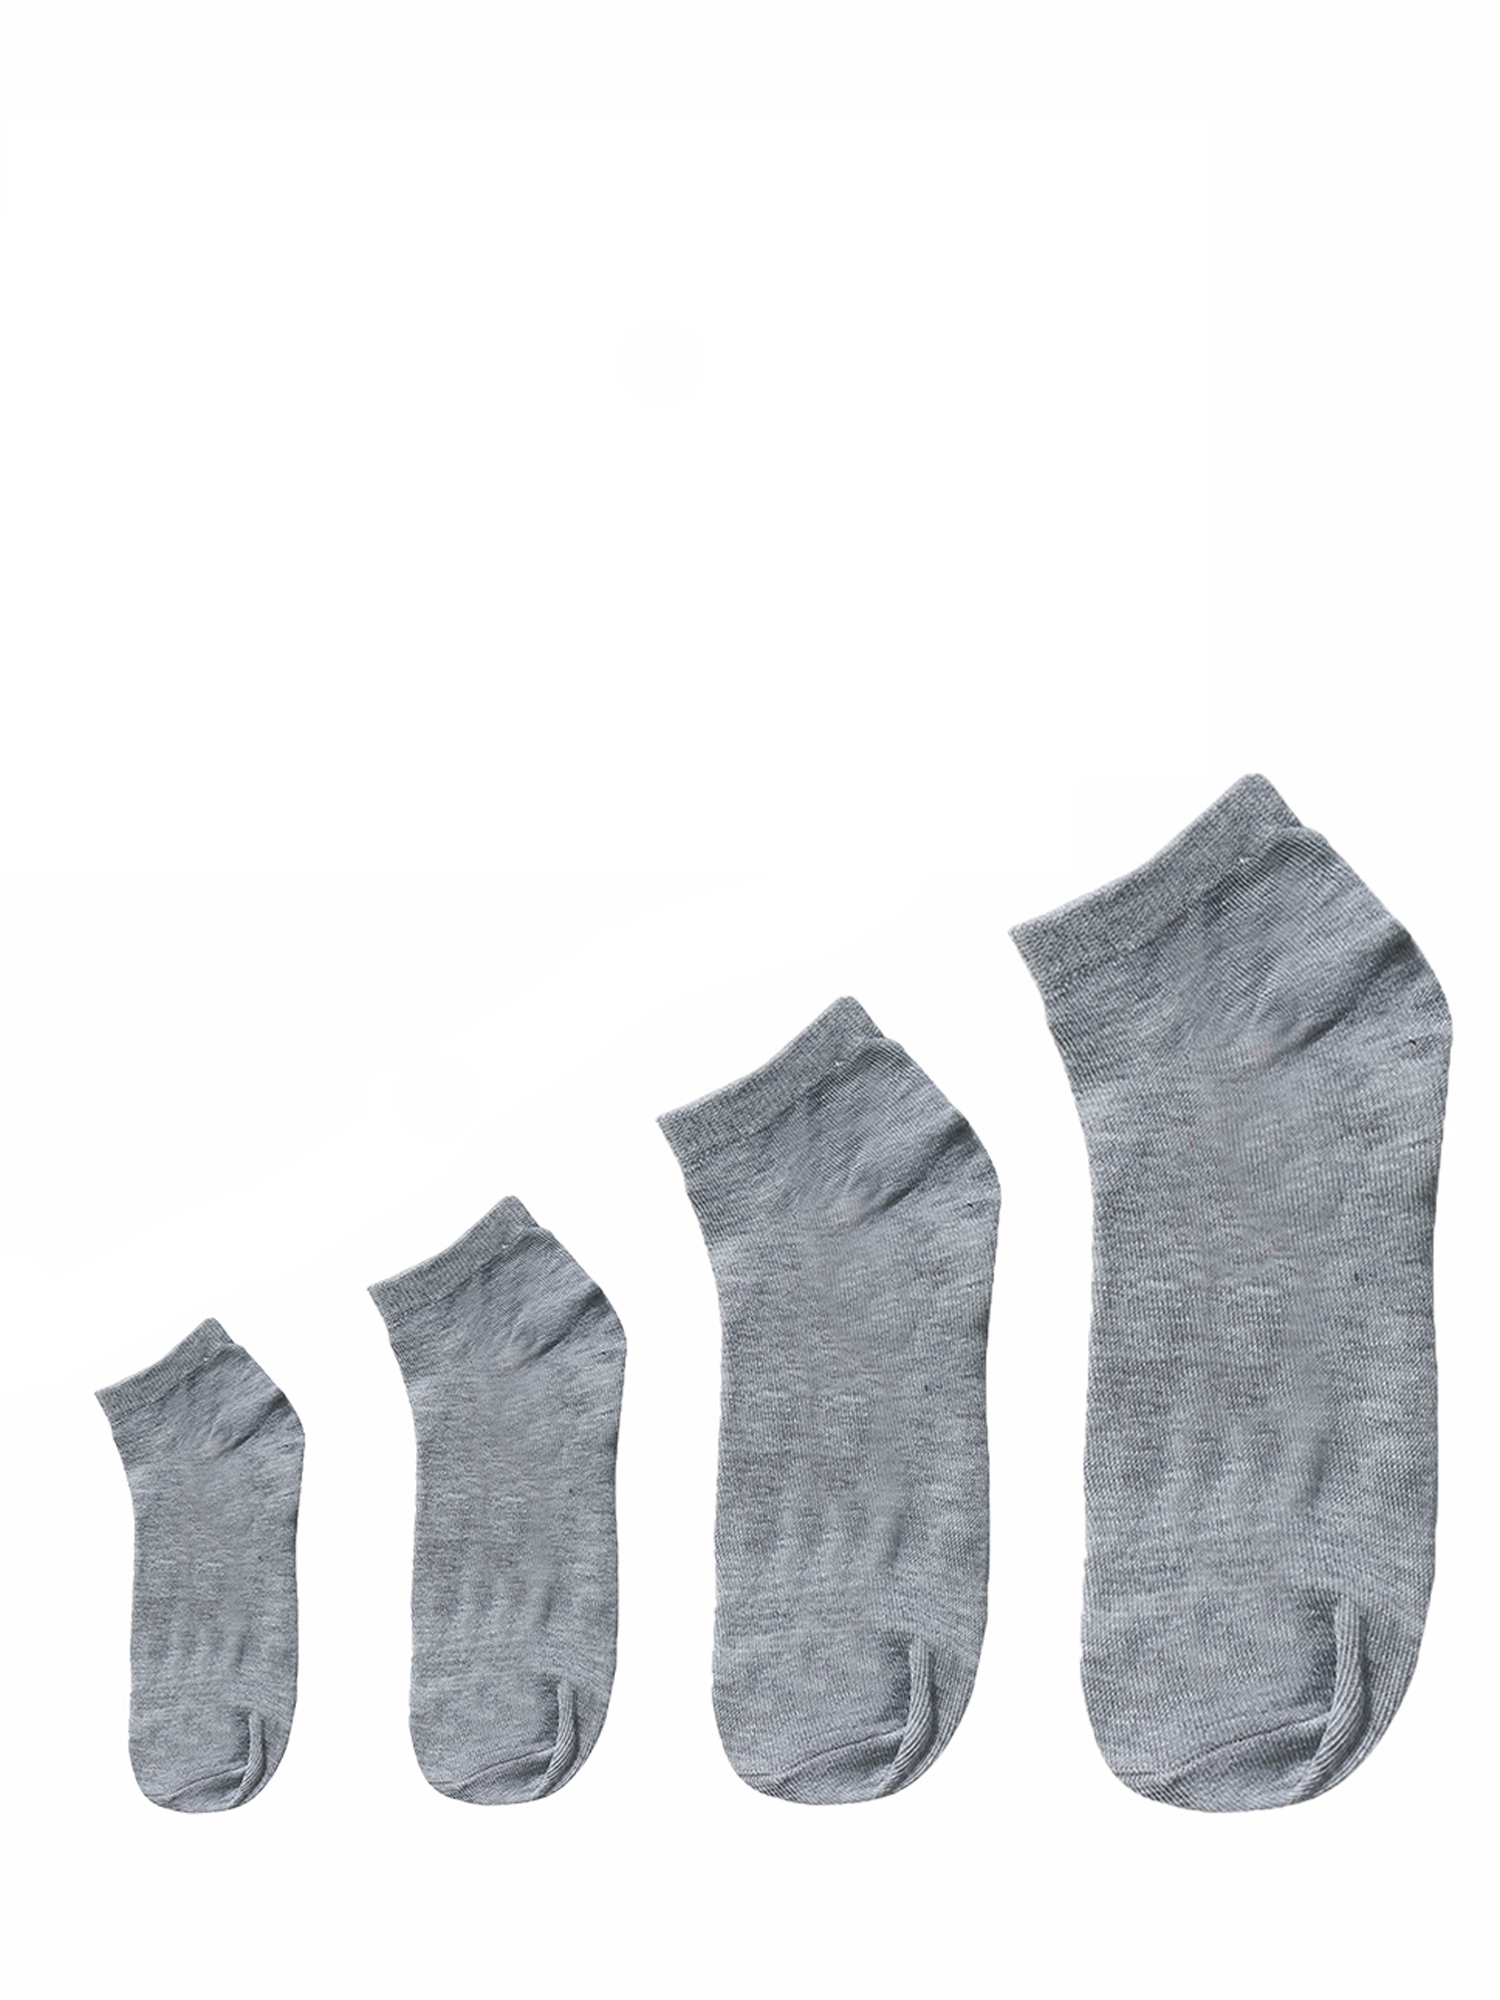 Unique Bargains Soft Cotton Athletic Ankle Socks 5-Pack (Junior & Women's) - image 5 of 7